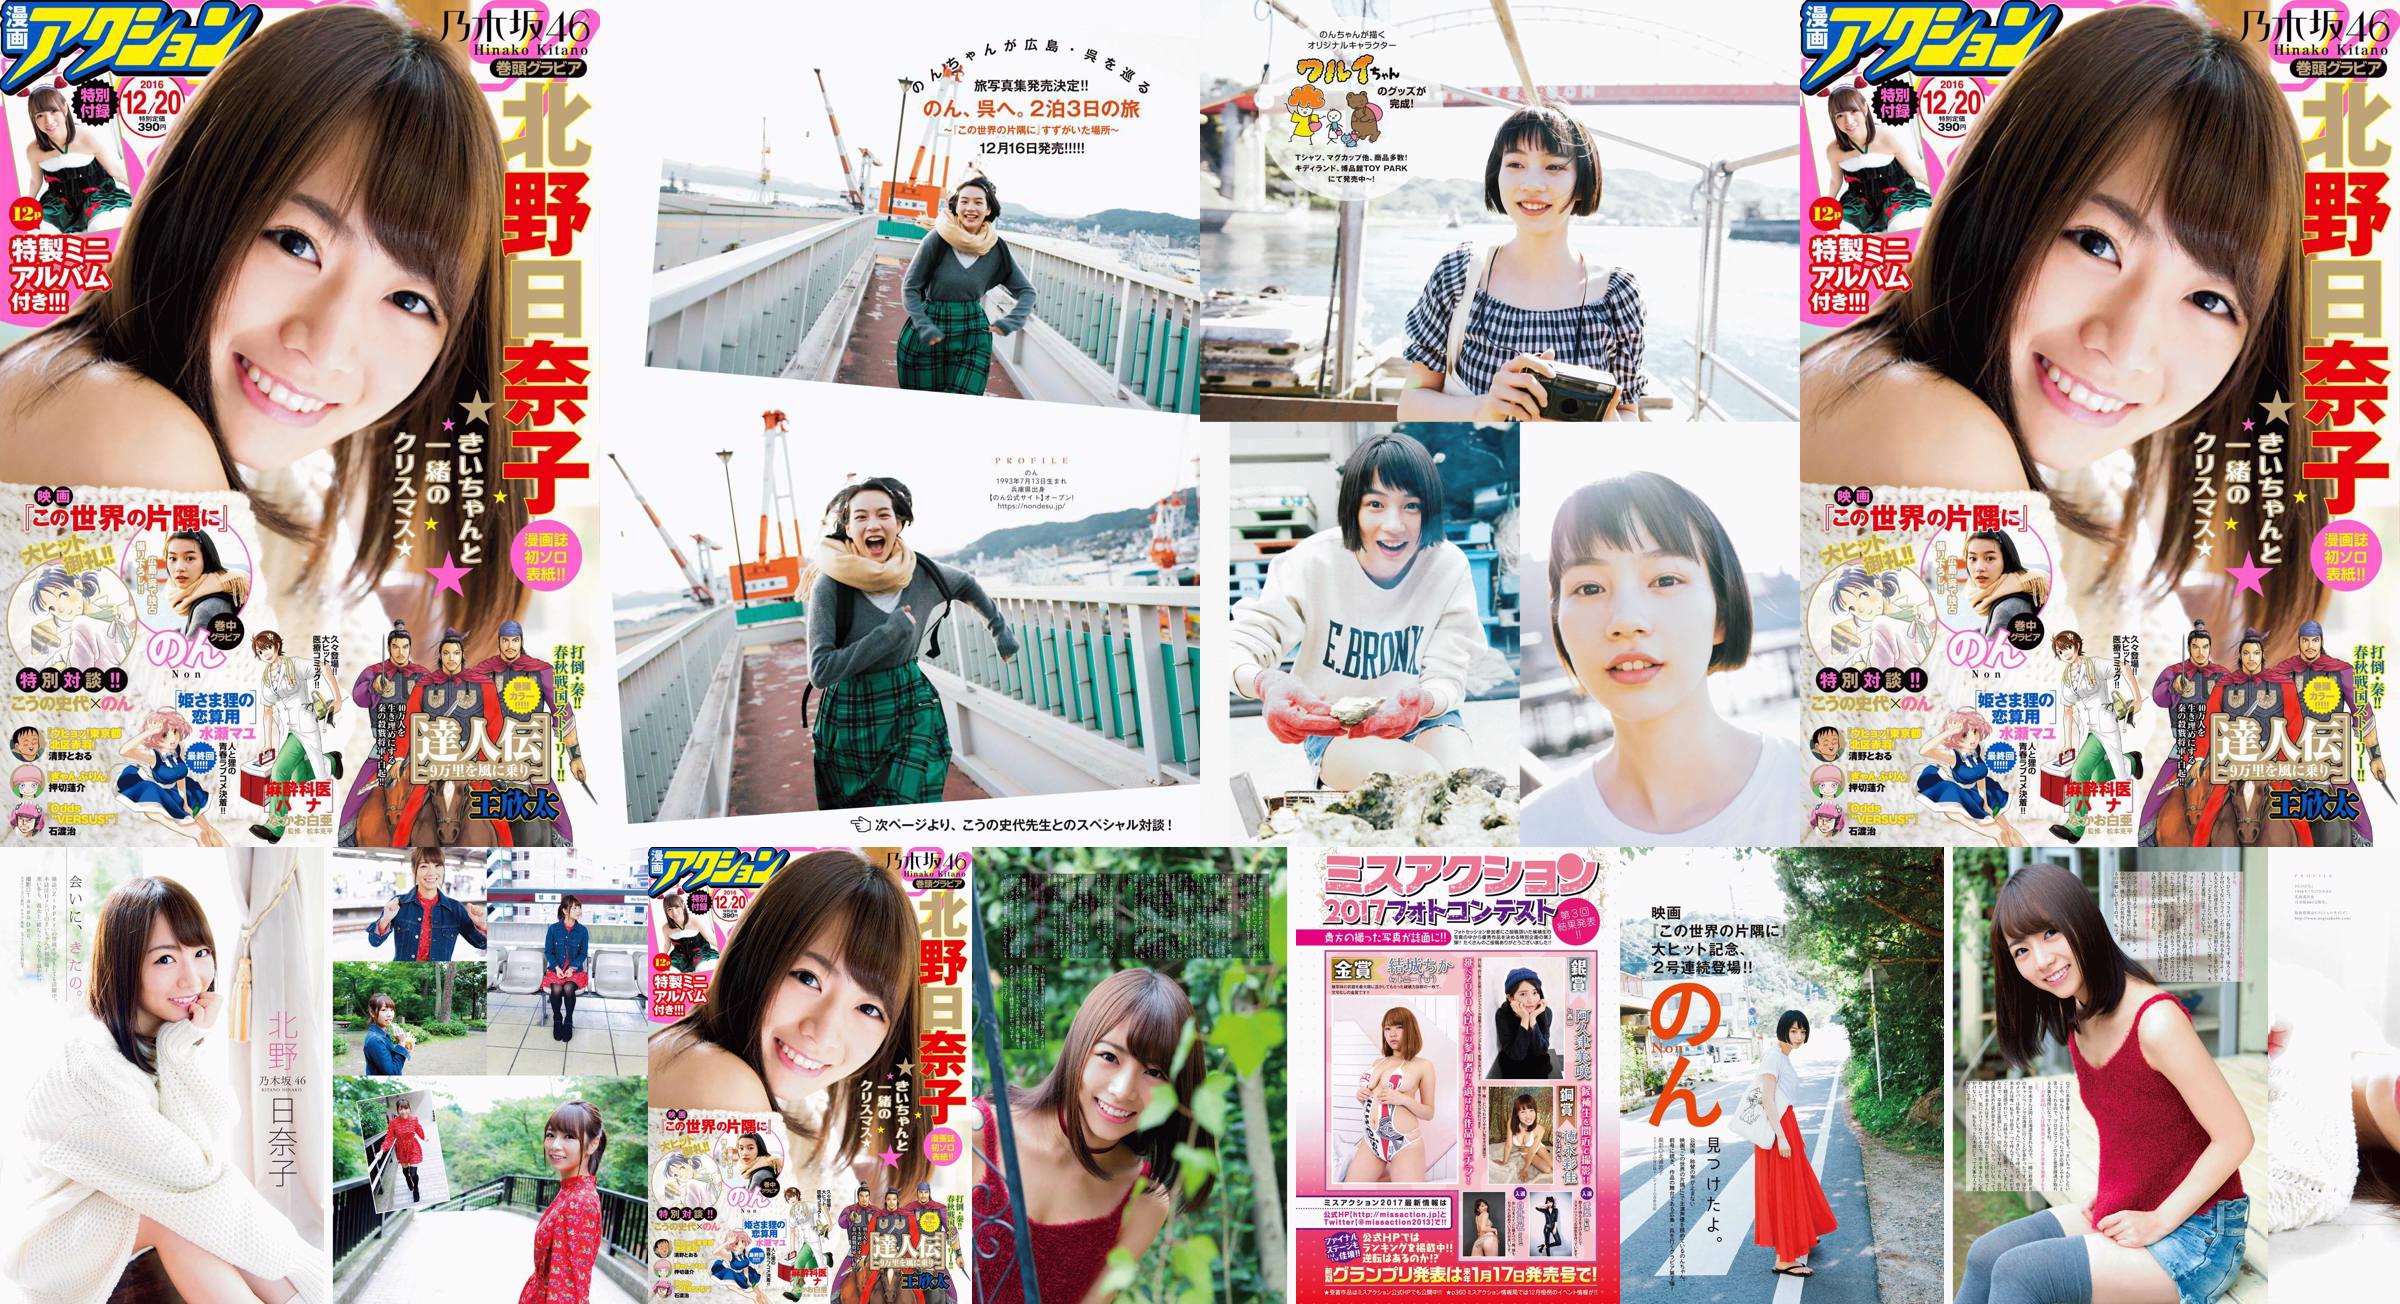 [Manga Action] Kitano Hinako のん 2016 No.24 Photo Magazine No.7b715a Page 1